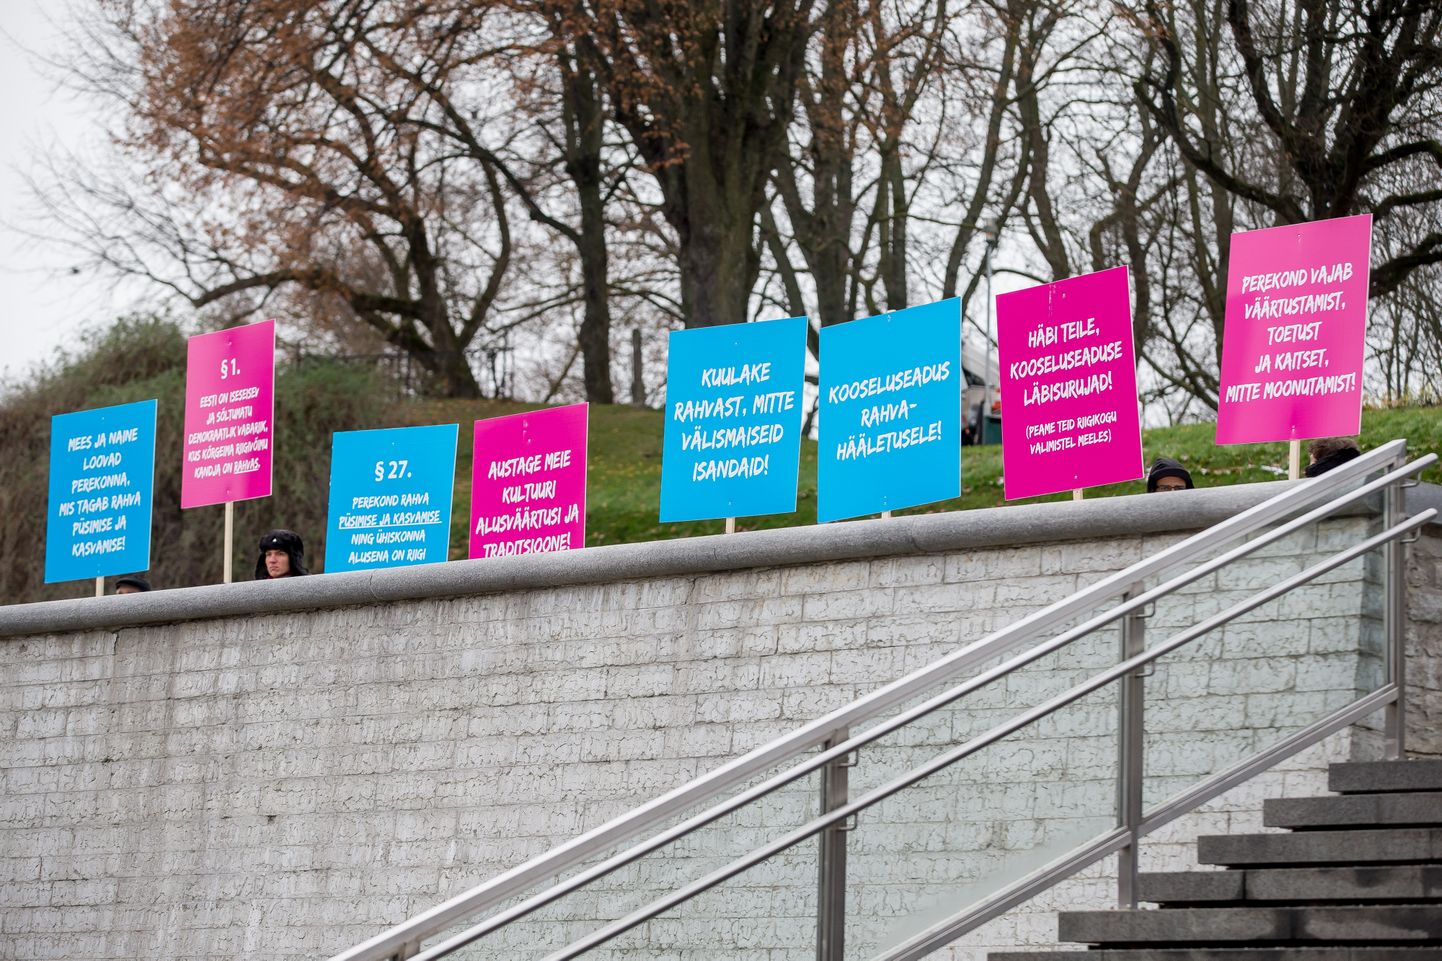 Tallinn 24.11.2015
Kooseluseaduse vastane meeleavaldus Vabaduse väljakul. 
Plakatid erinevate tekstidega.
FOTO: SANDER ILVEST/POSTIMEES